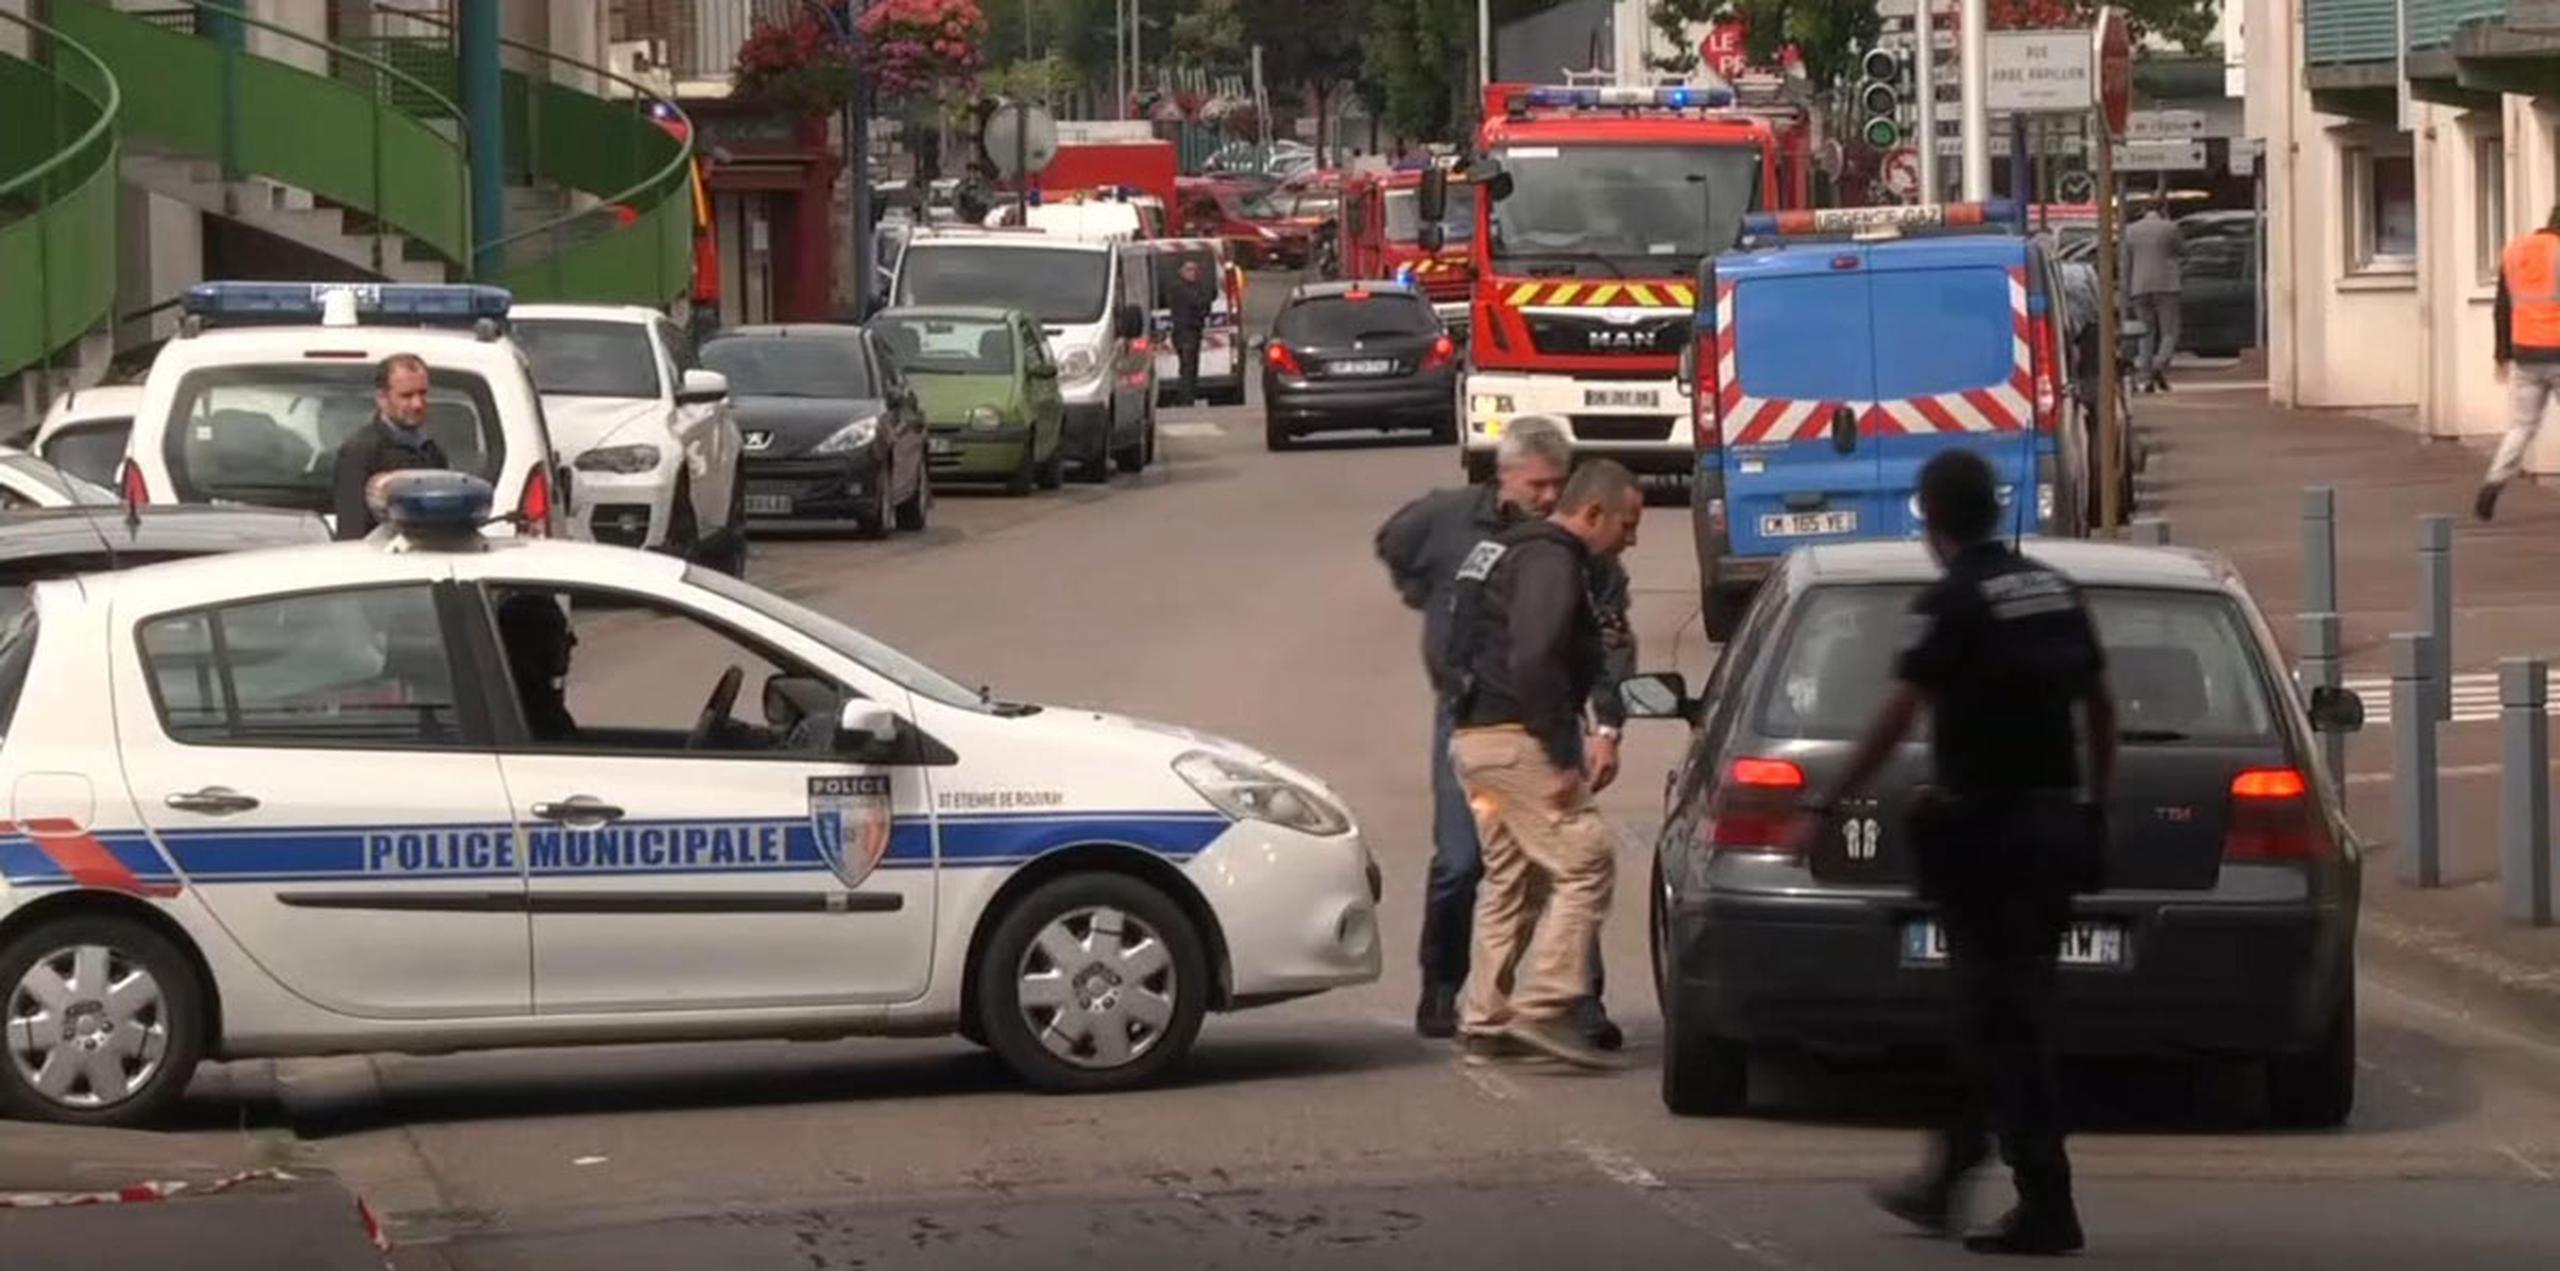 Francia se encuentra en estado de emergencia y tiene presencia policial adicional tras el ataque del 14 de julio en Niza. (AP)